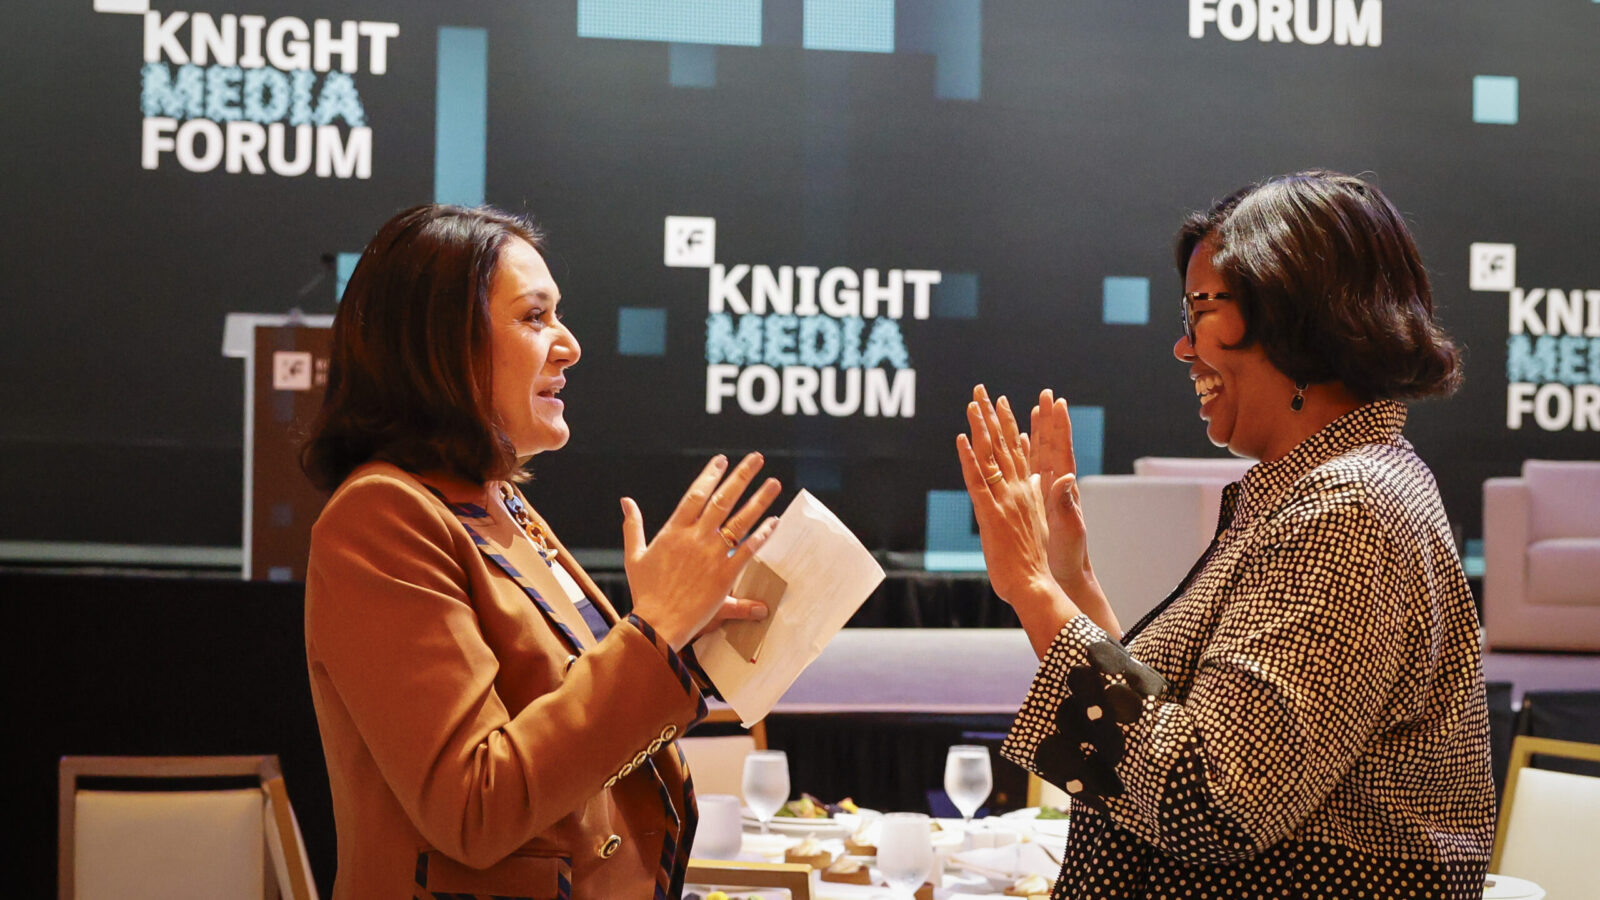 Knight's Maribel Perez Wadsworth and Press Forward's Dale Anglin at the Knight Media Forum 2024. Photo by Eva Marie Uzcategui